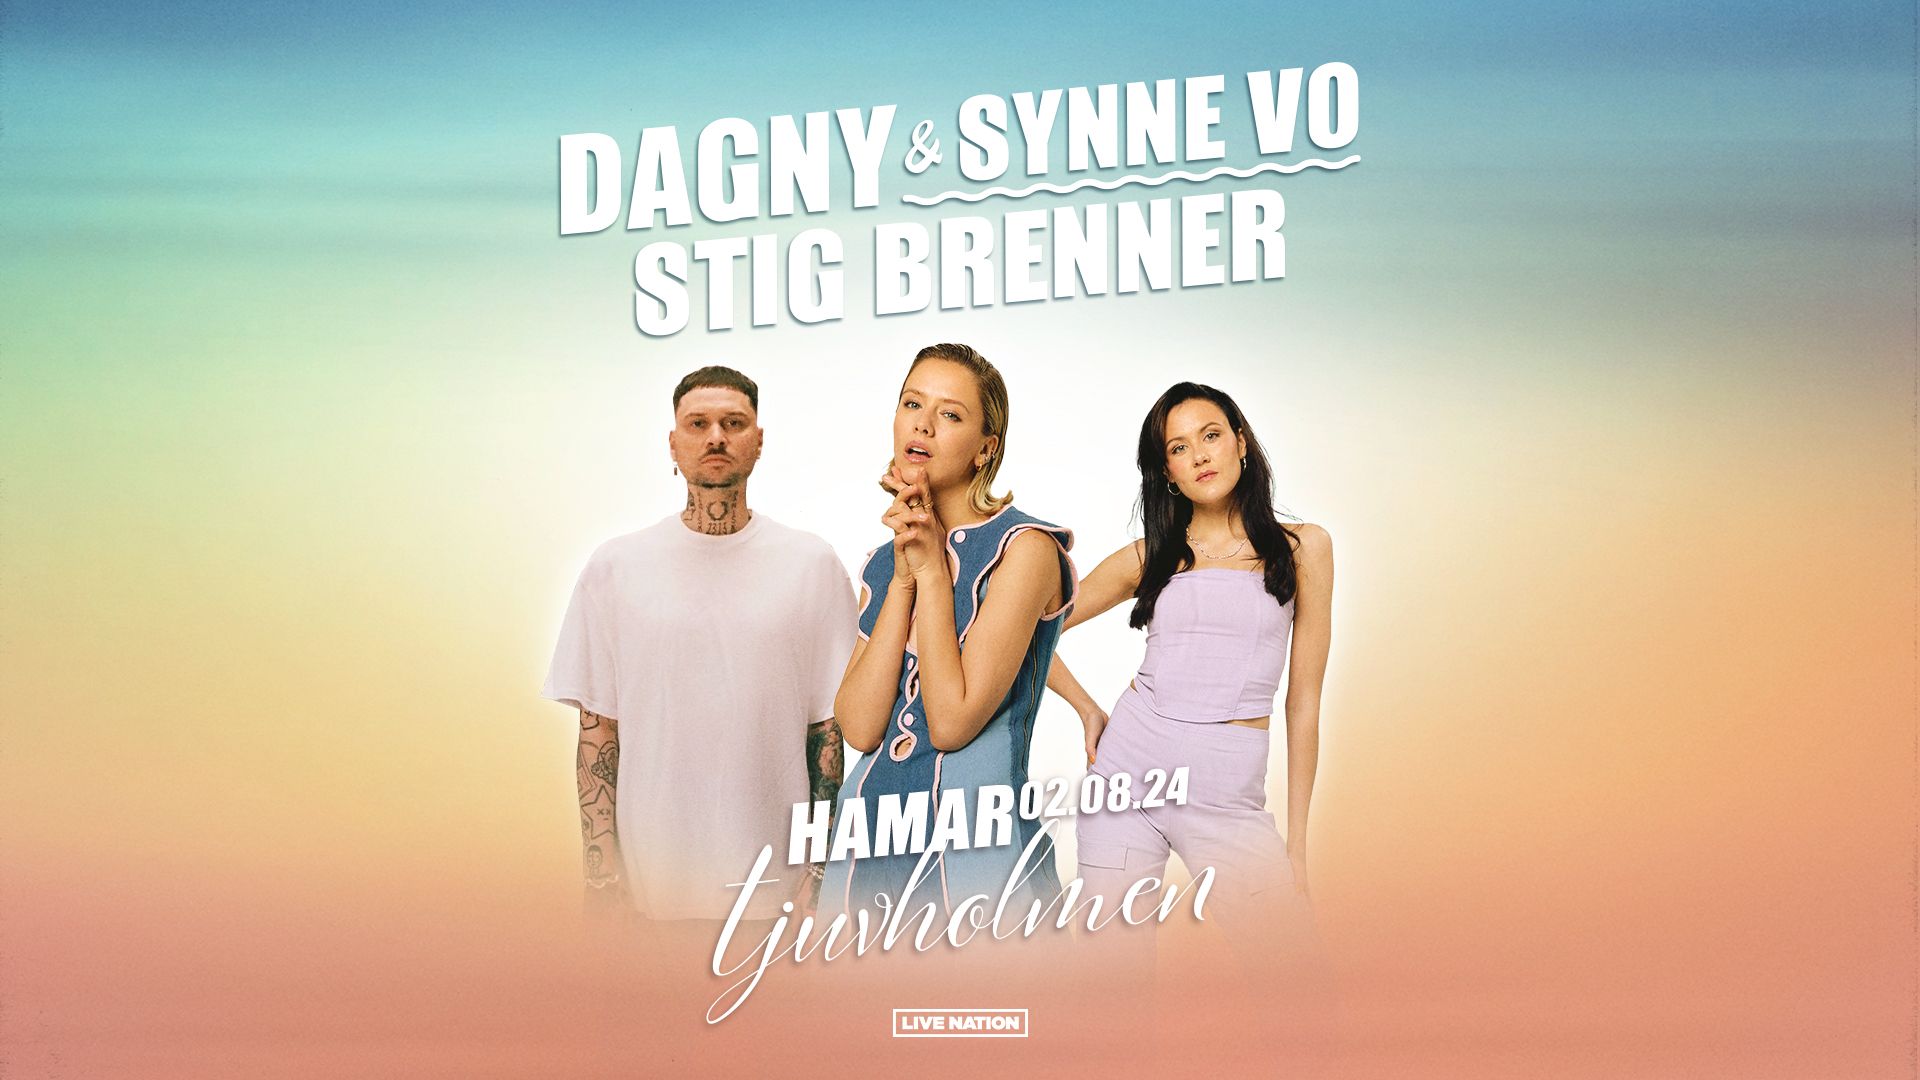 Dagny-Synne-Vo-og-Stig-Brenner